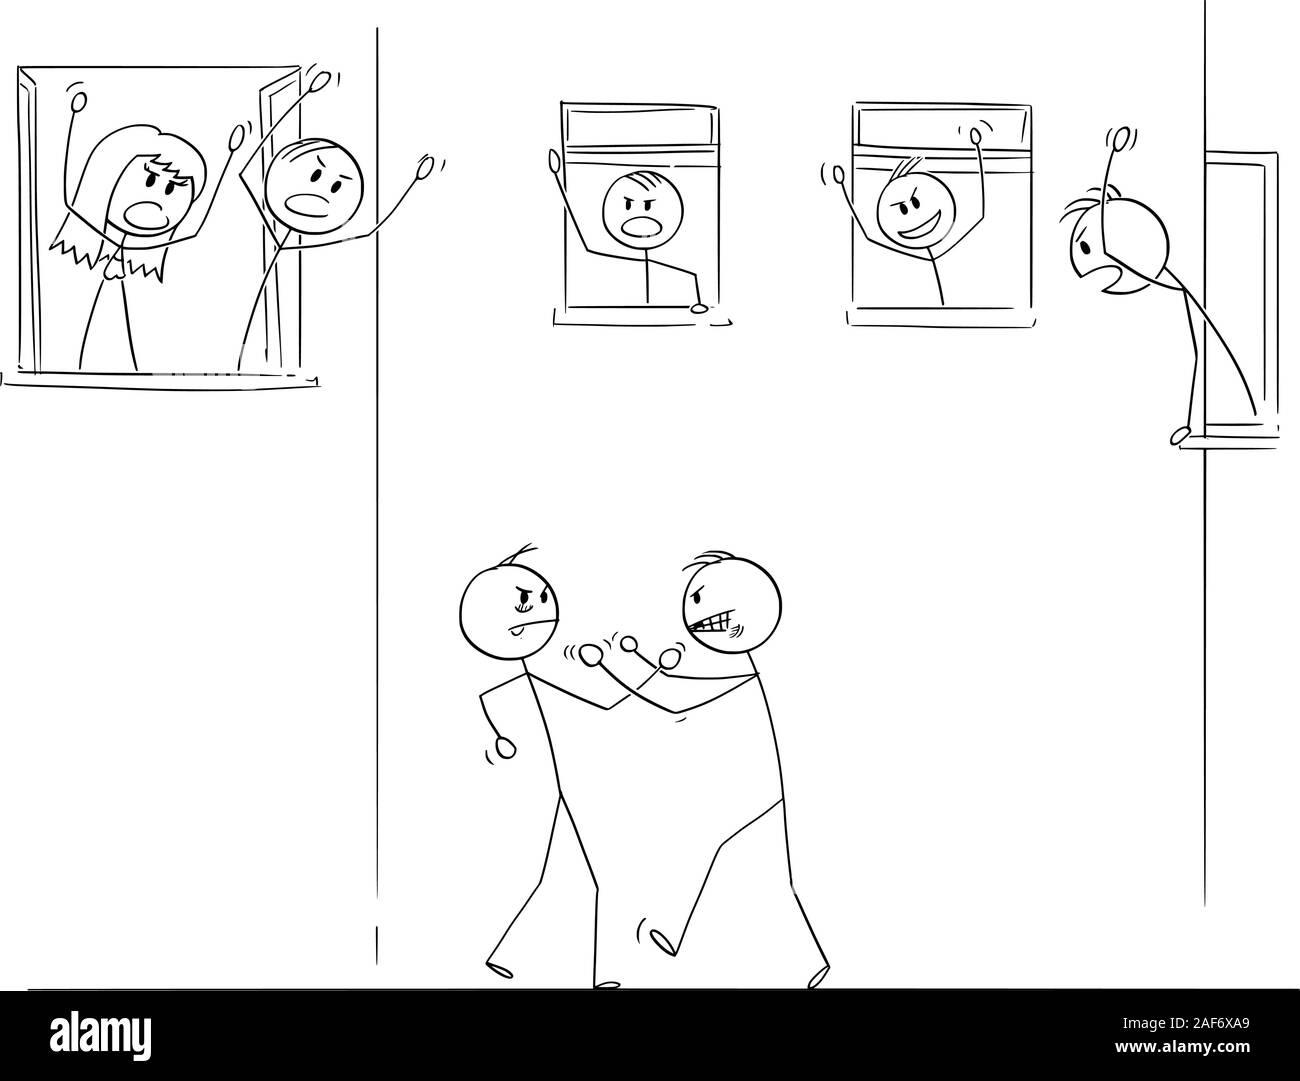 Vector cartoon stick figura disegno illustrazione concettuale di due uomini arrabbiati o combattimenti fistfighting sulla strada, le persone che vivono nelle case intorno sono il tifo da Windows. Illustrazione Vettoriale